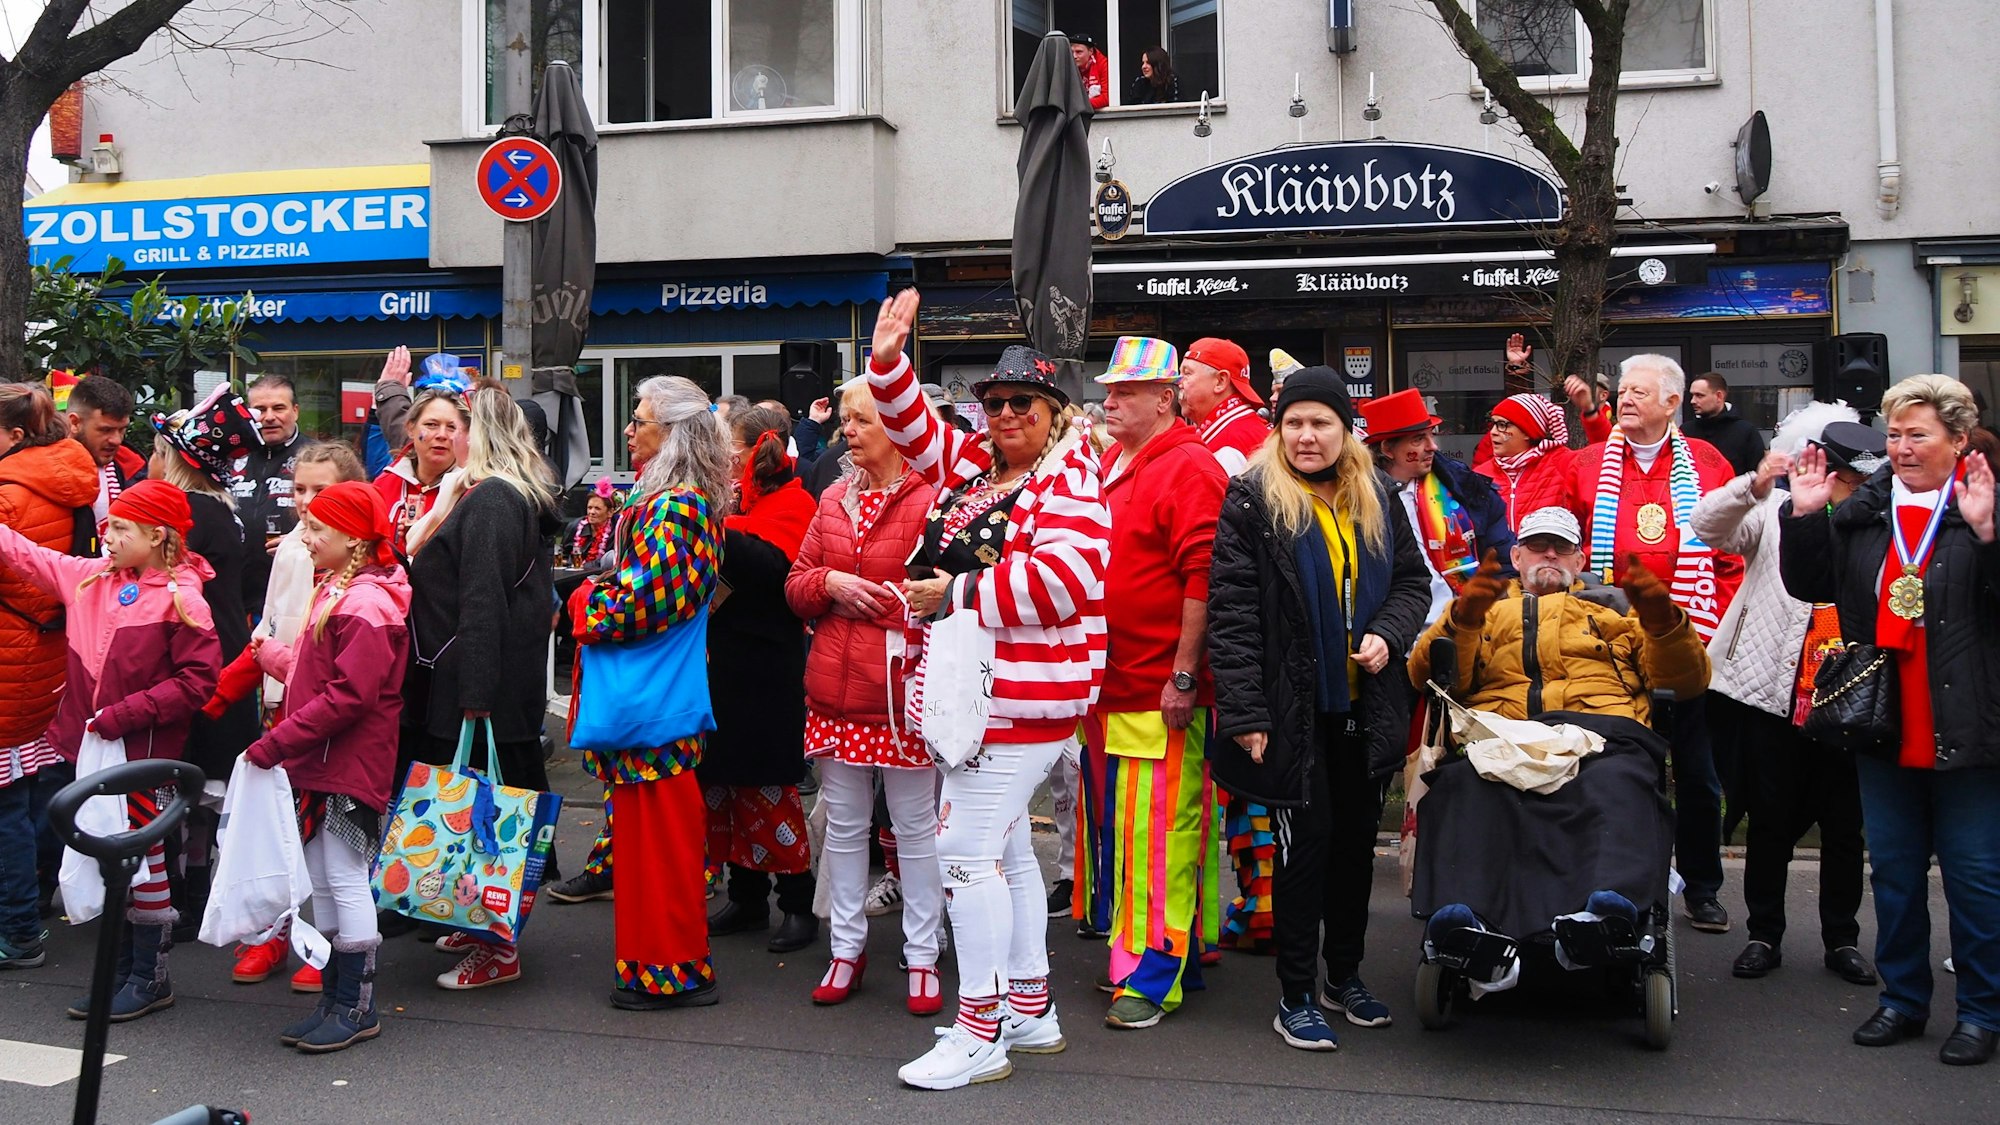 Tanzgruppen, Fußgruppen, Wagen und Musikgruppen sorgen für prima Karnevalsstimmung beim Veedelszug in Zollstock.